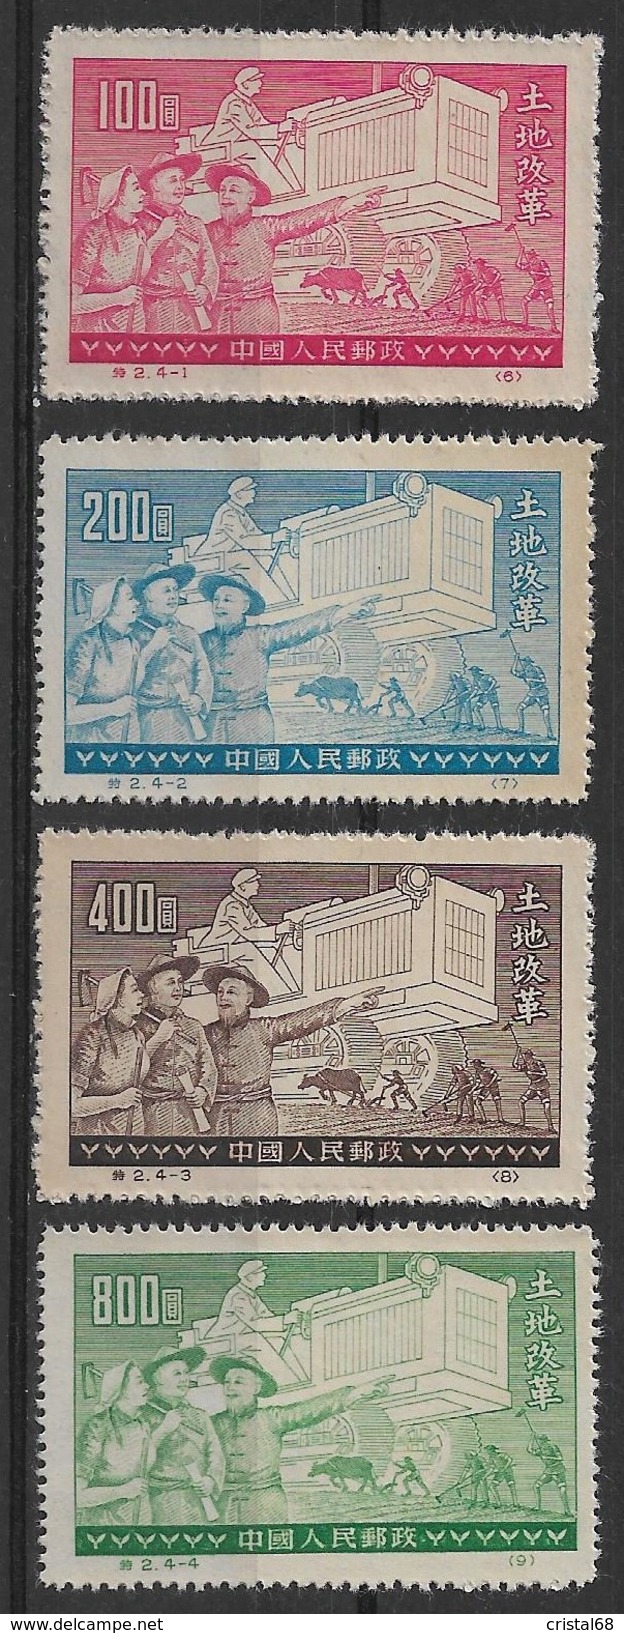 CHINE 1951 - Timbres N°929A à N°929D (4 Valeurs) - Neufs - Official Reprints